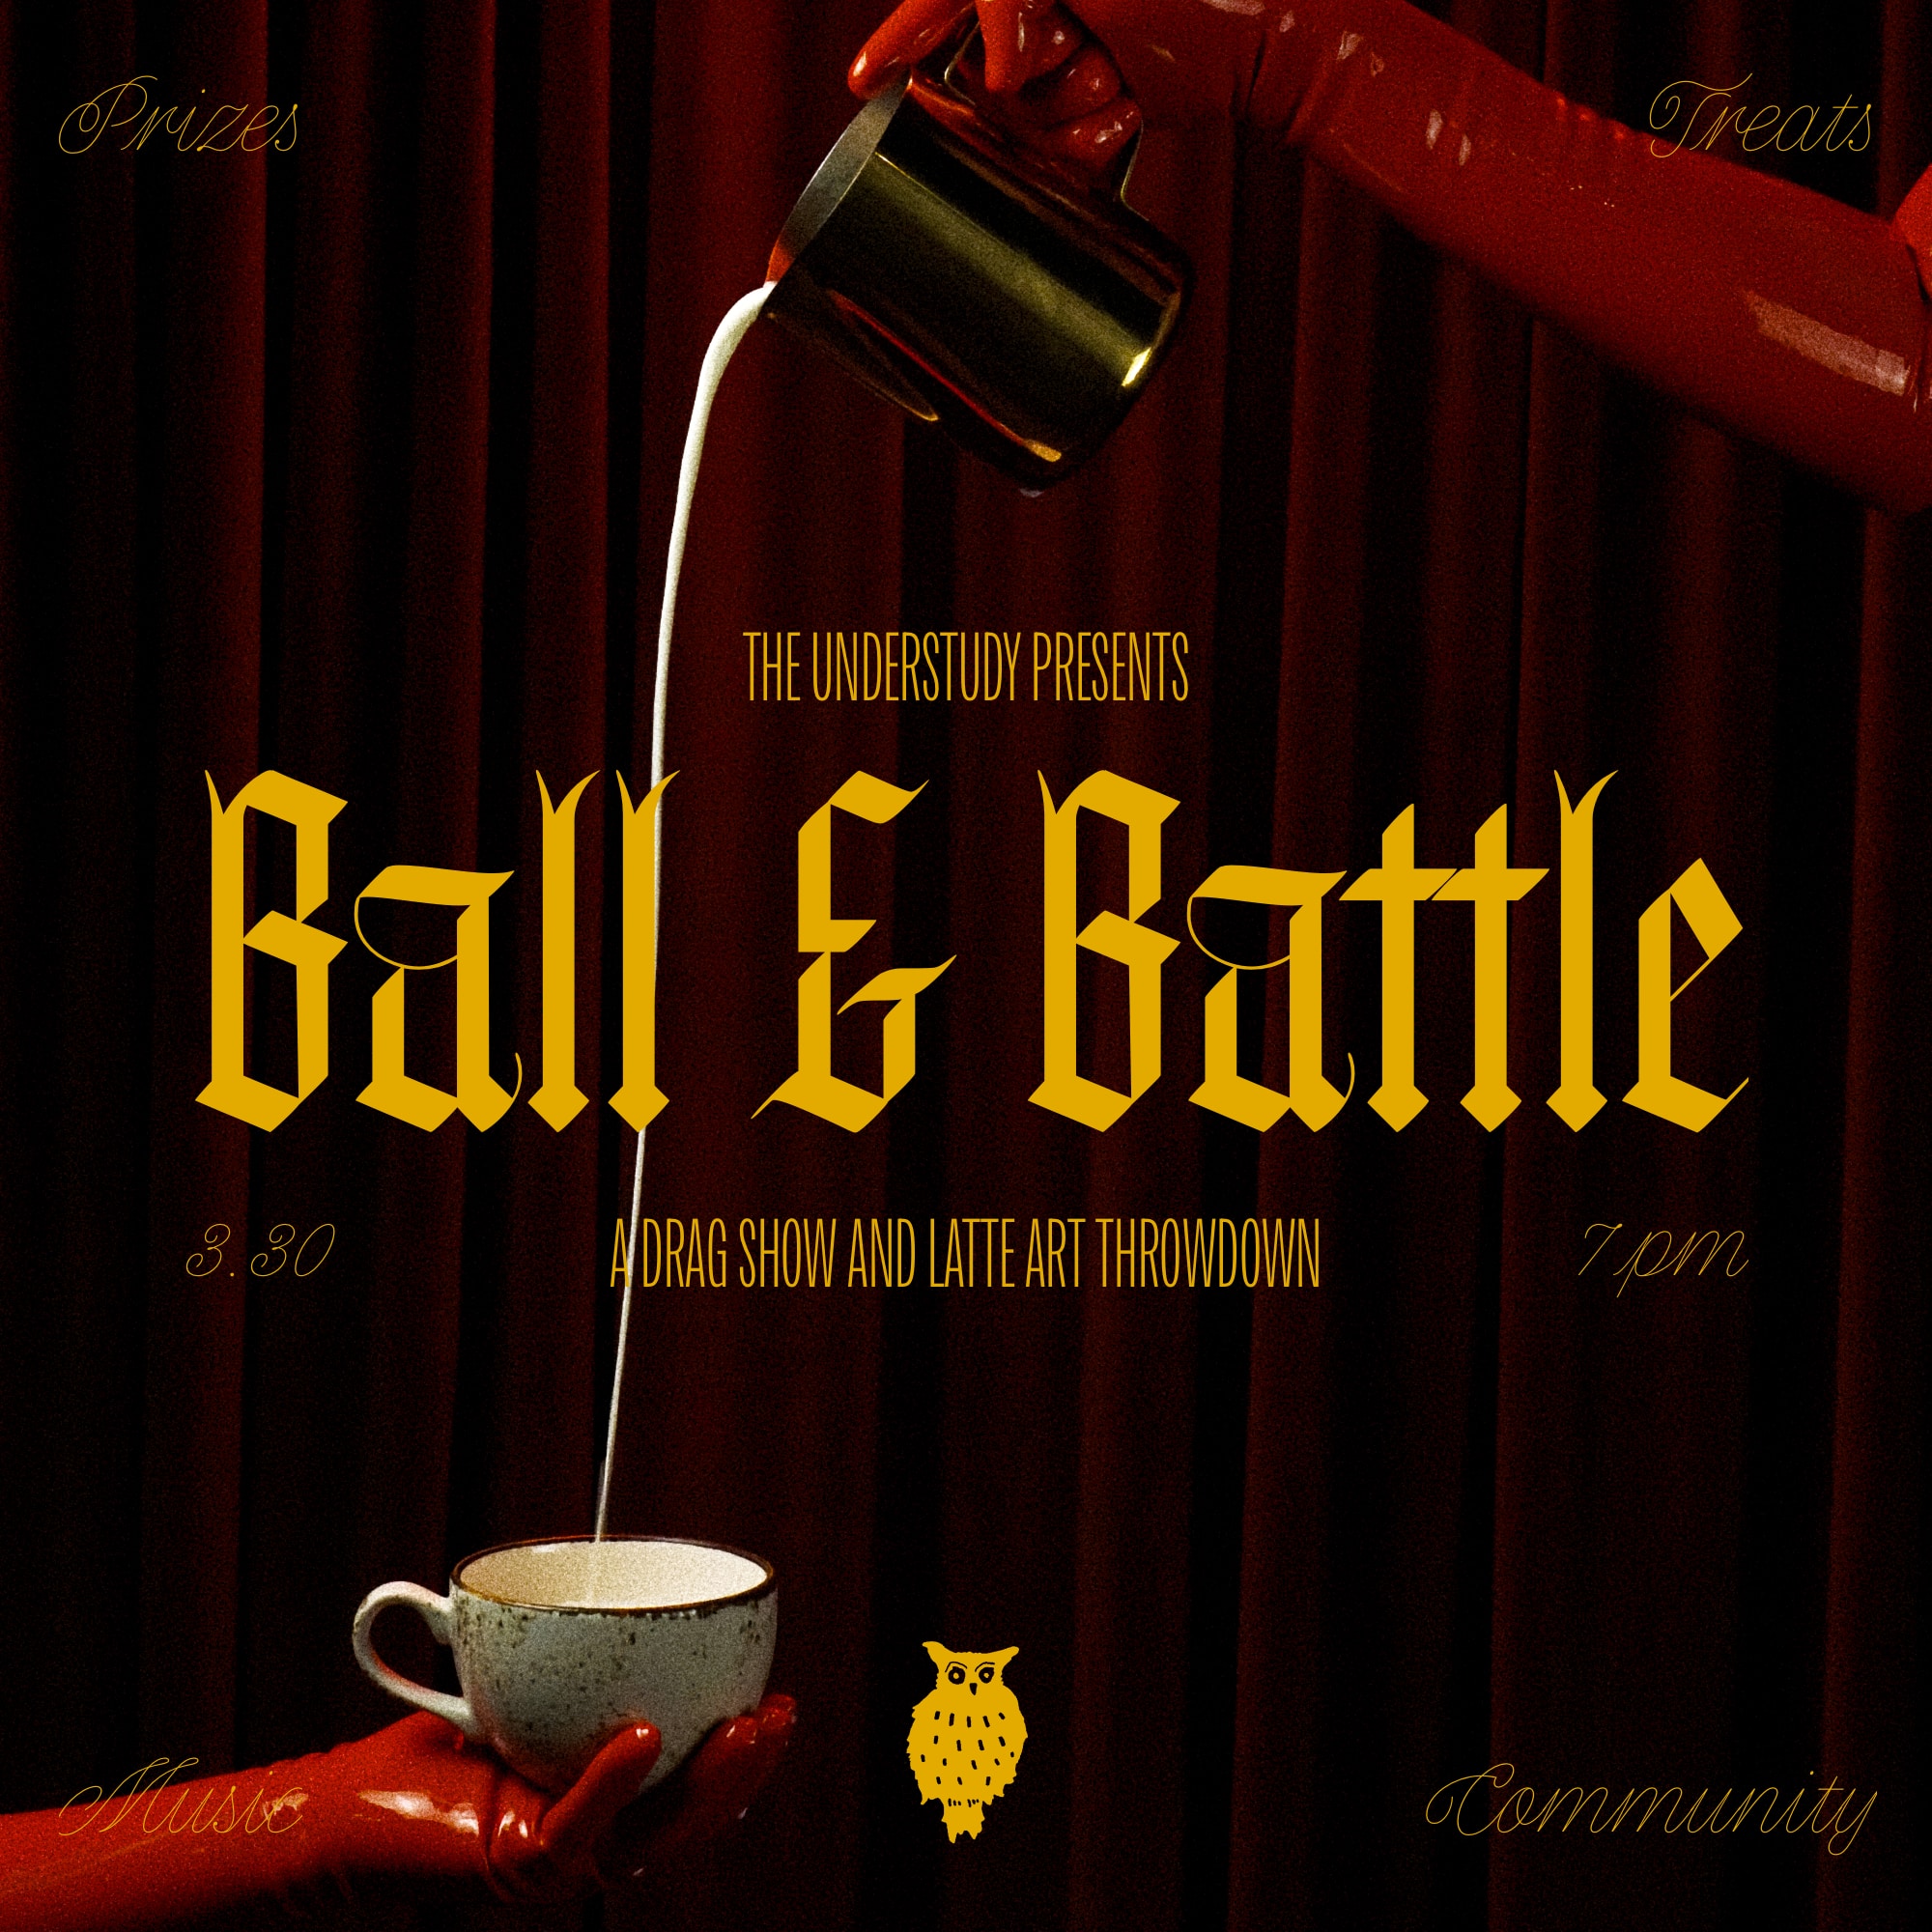 Ball & Battle: A Drag Show and Latte Art Throwdown